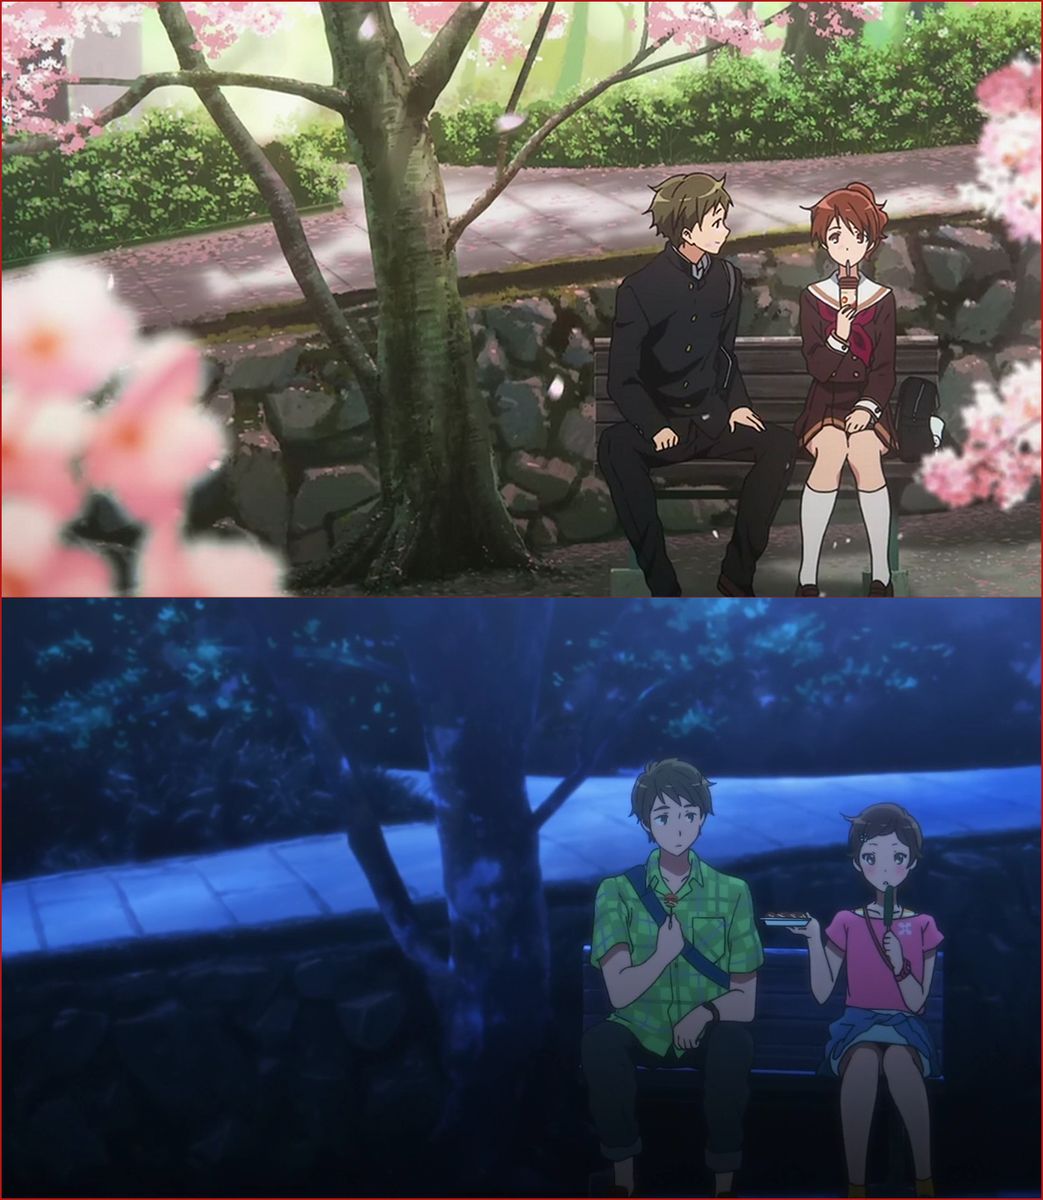 ｪ Di Twitter 響け ユーフォニアム 8話 いつも久美子と秀一が並んで座っているベンチだって事を 別の駅で降りる葉月はきっと知らないんだろう Anime Eupho 響けユーフォニアム Http T Co Ca8t2a3gje